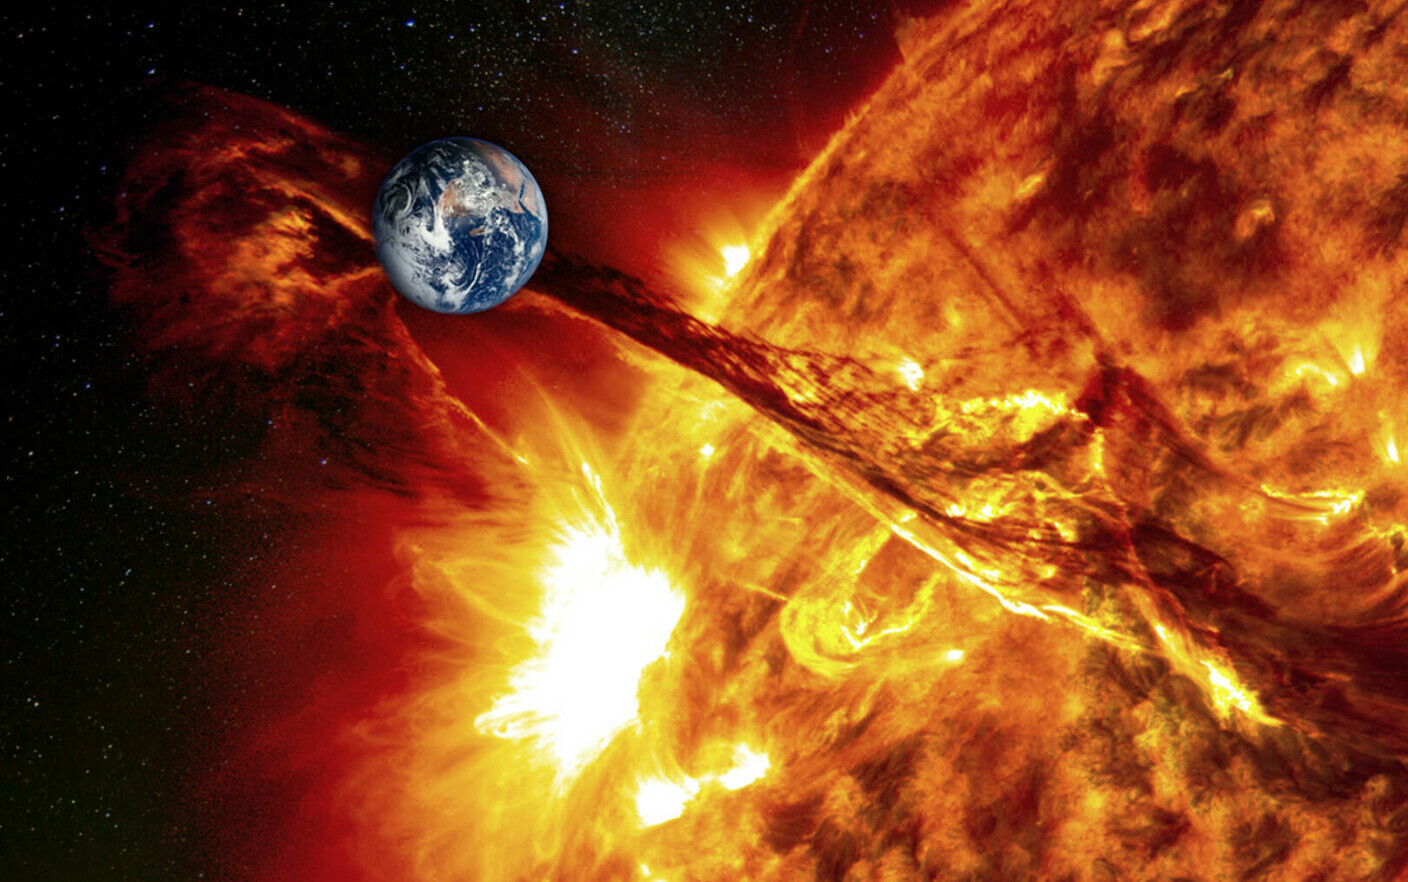 O furtună geomagnetică solară va lovi planeta Pământ